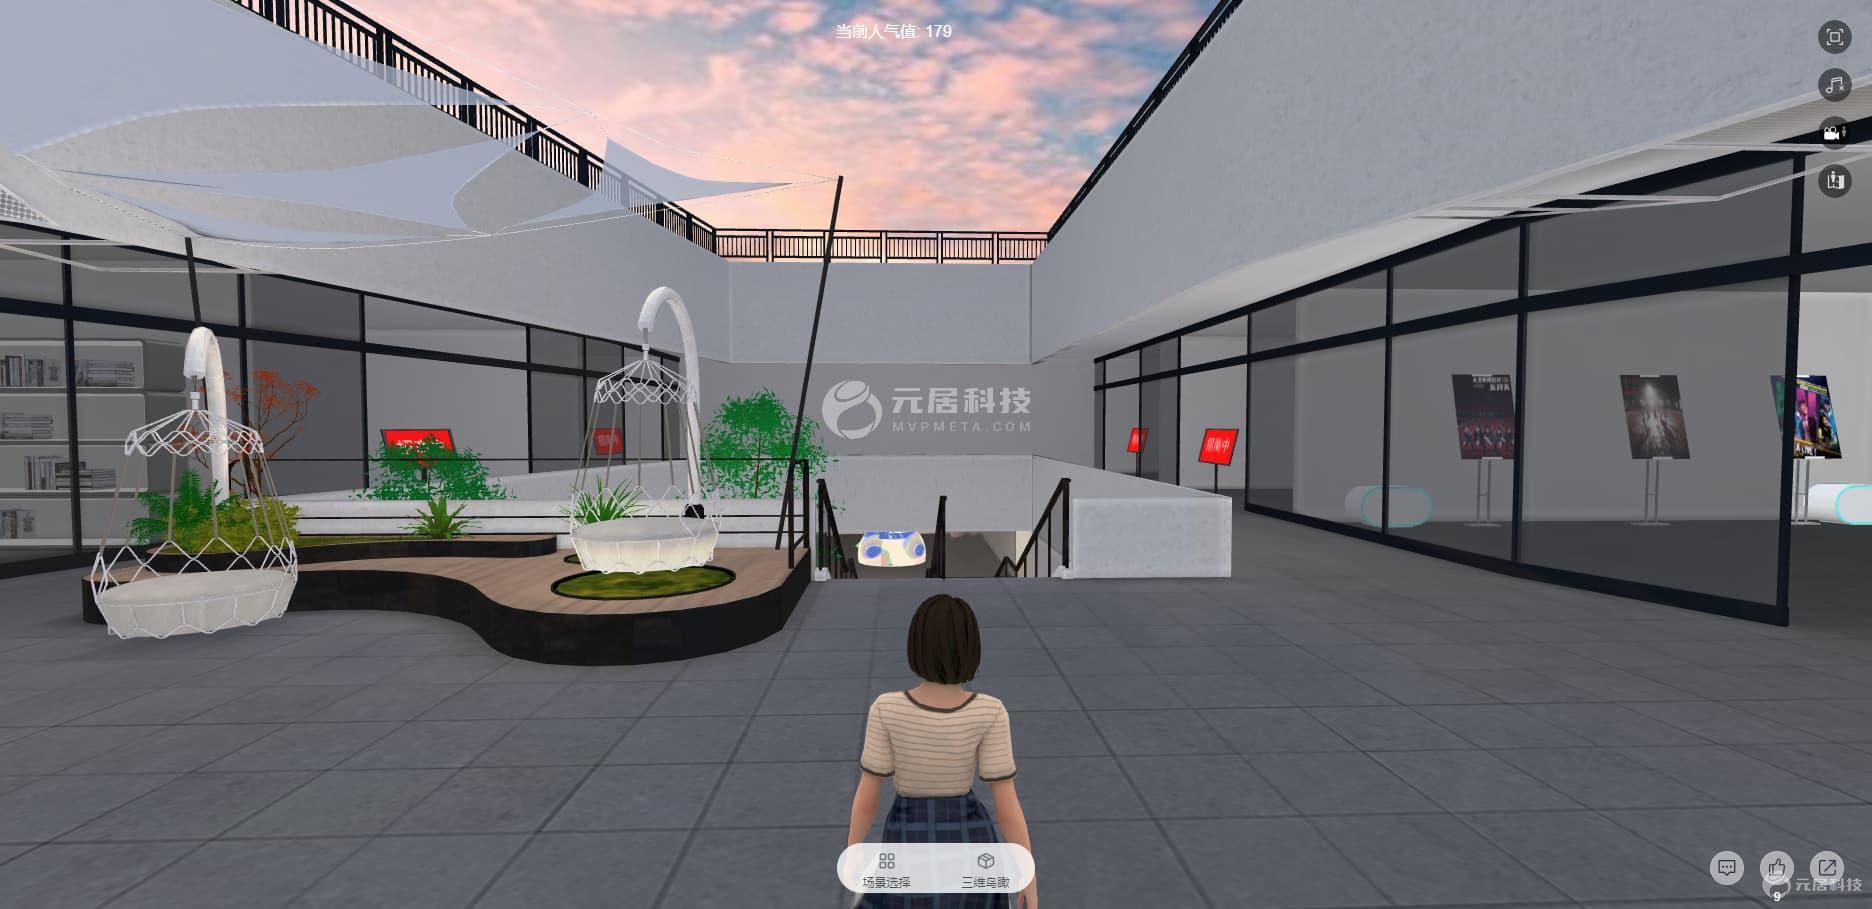 3D虚拟商城